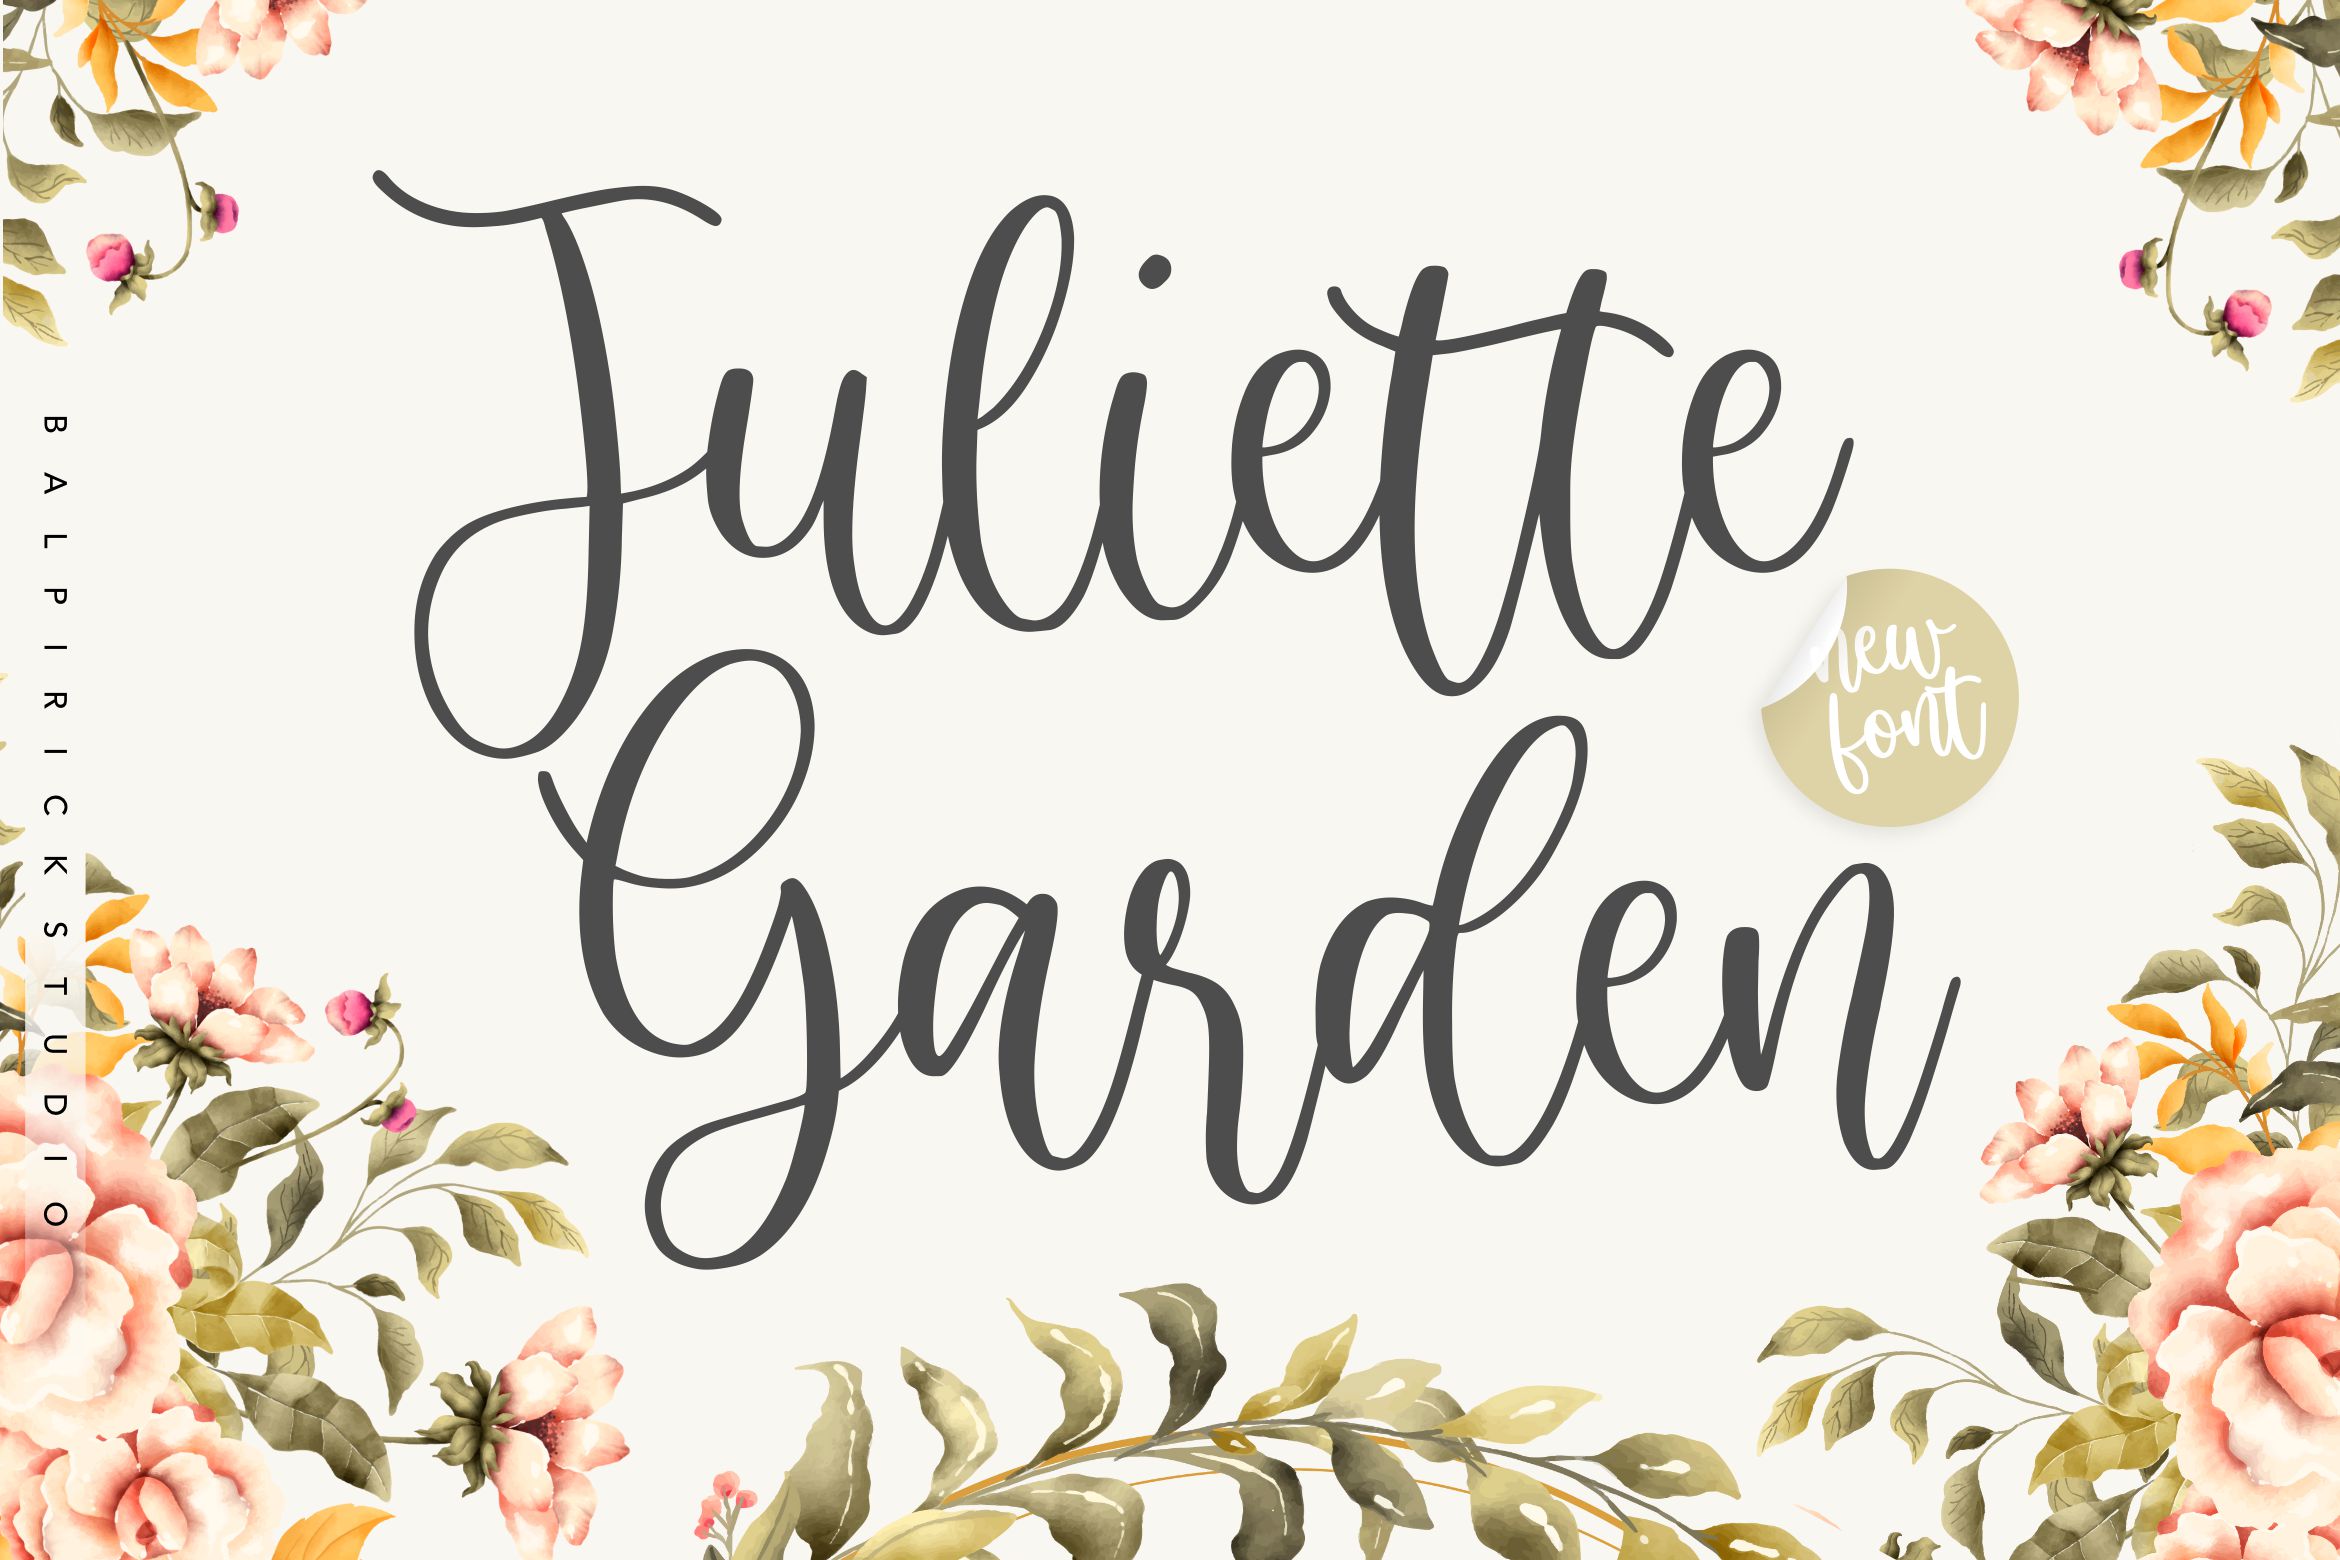 Juliette Garden